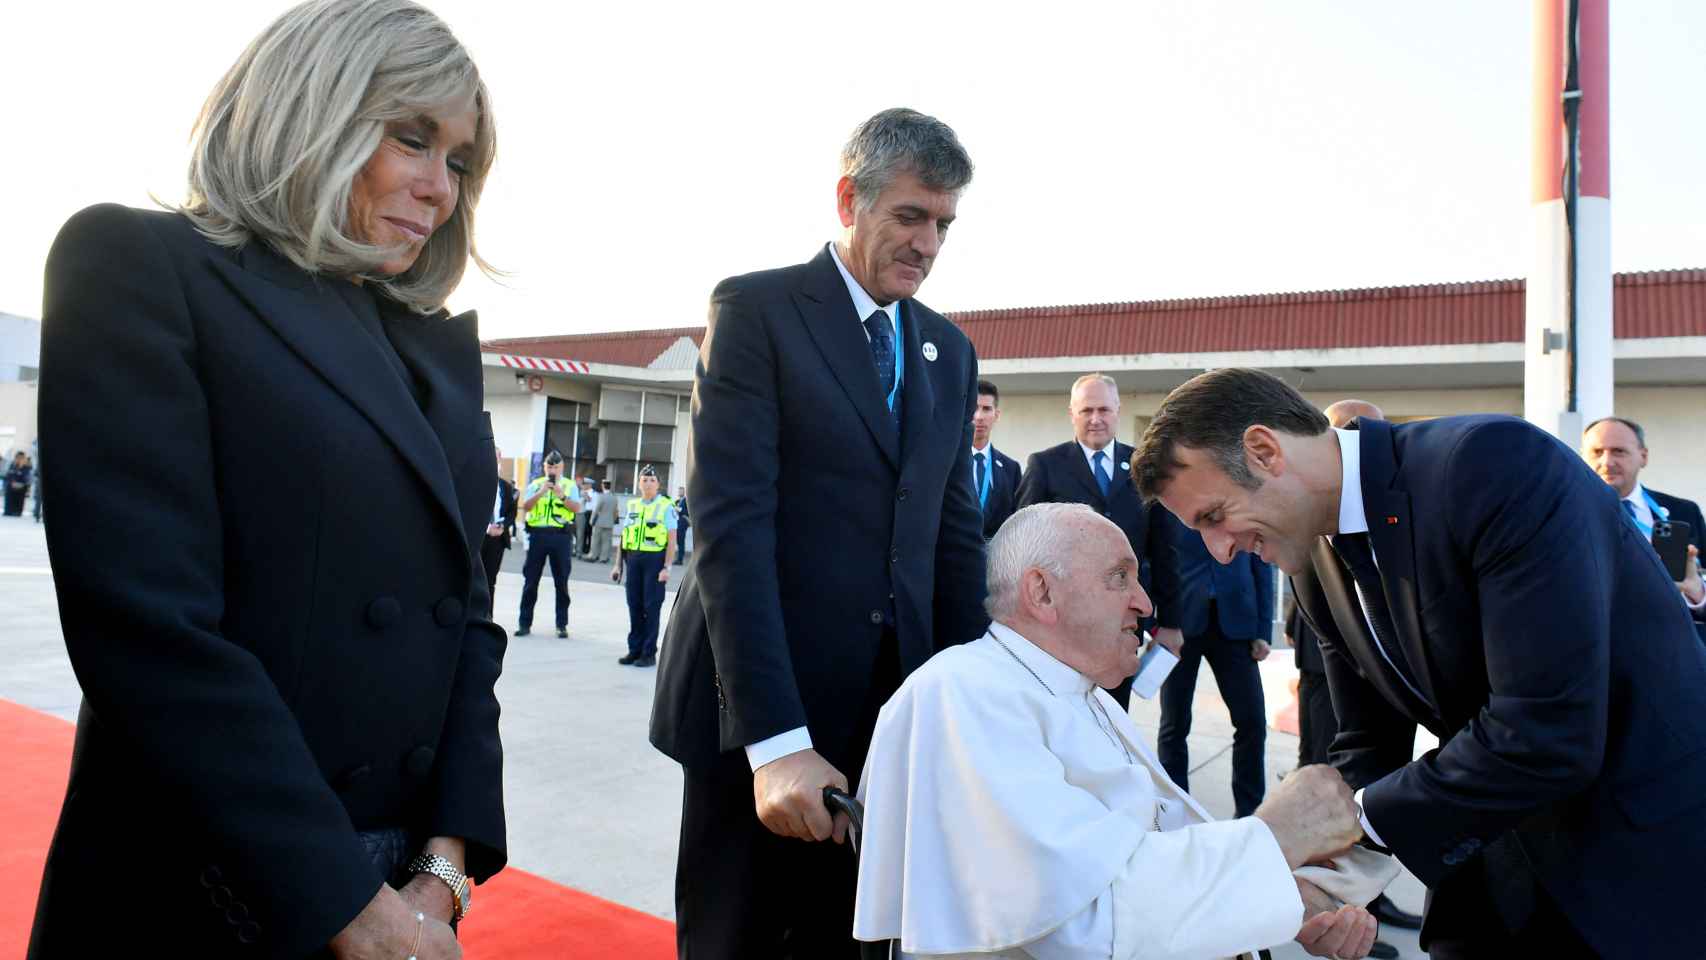 El Papa Francisco se despide de Macron y su mujer en el aeropuerto